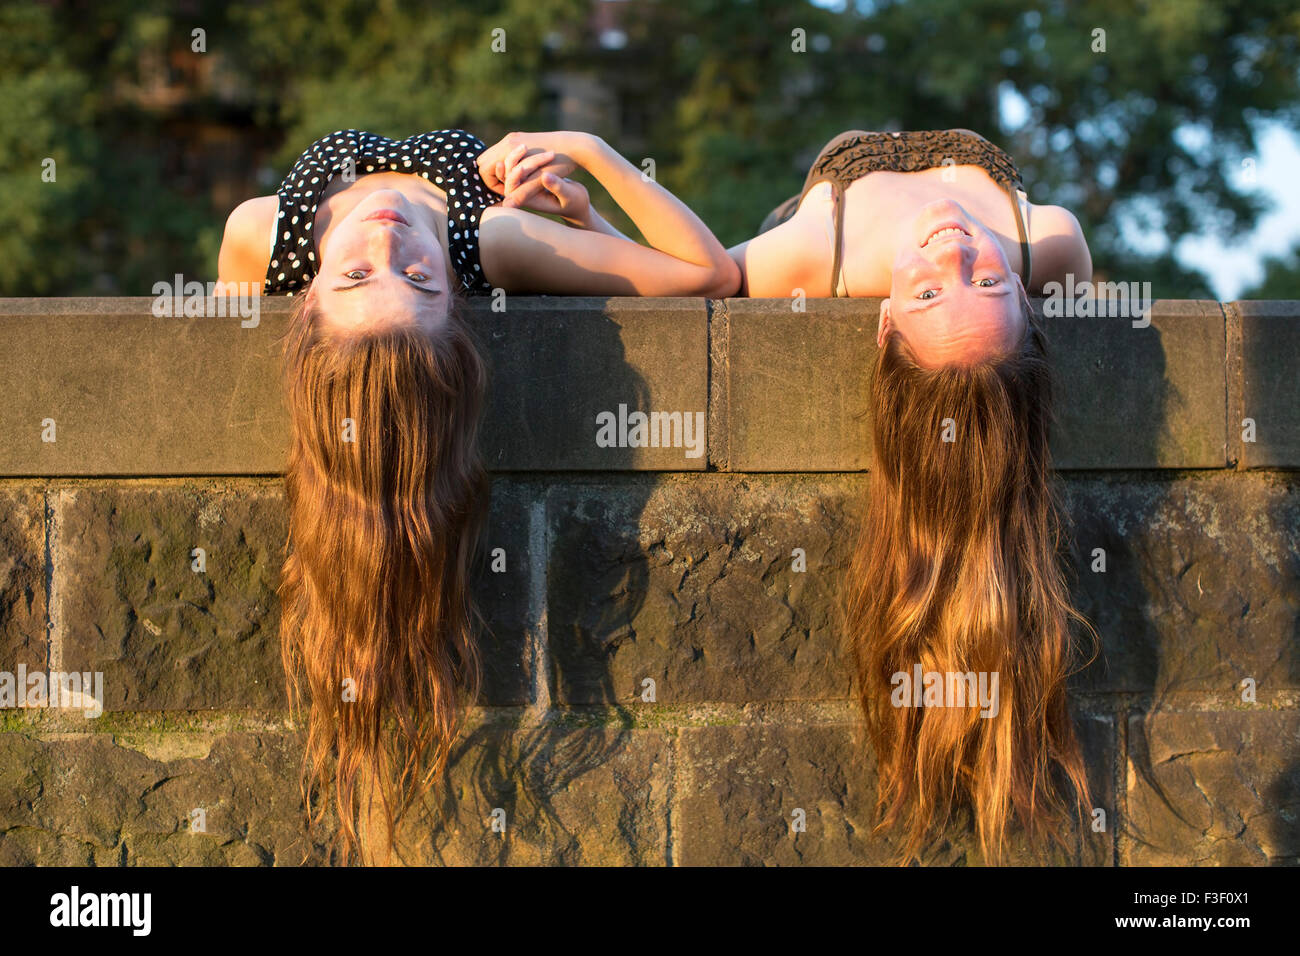 Zwei junge Mädchen liegend auf einem Stein Tafel mit langen Haaren hängen nach unten. Schönes weiches Licht bei Sonnenuntergang. Stockfoto